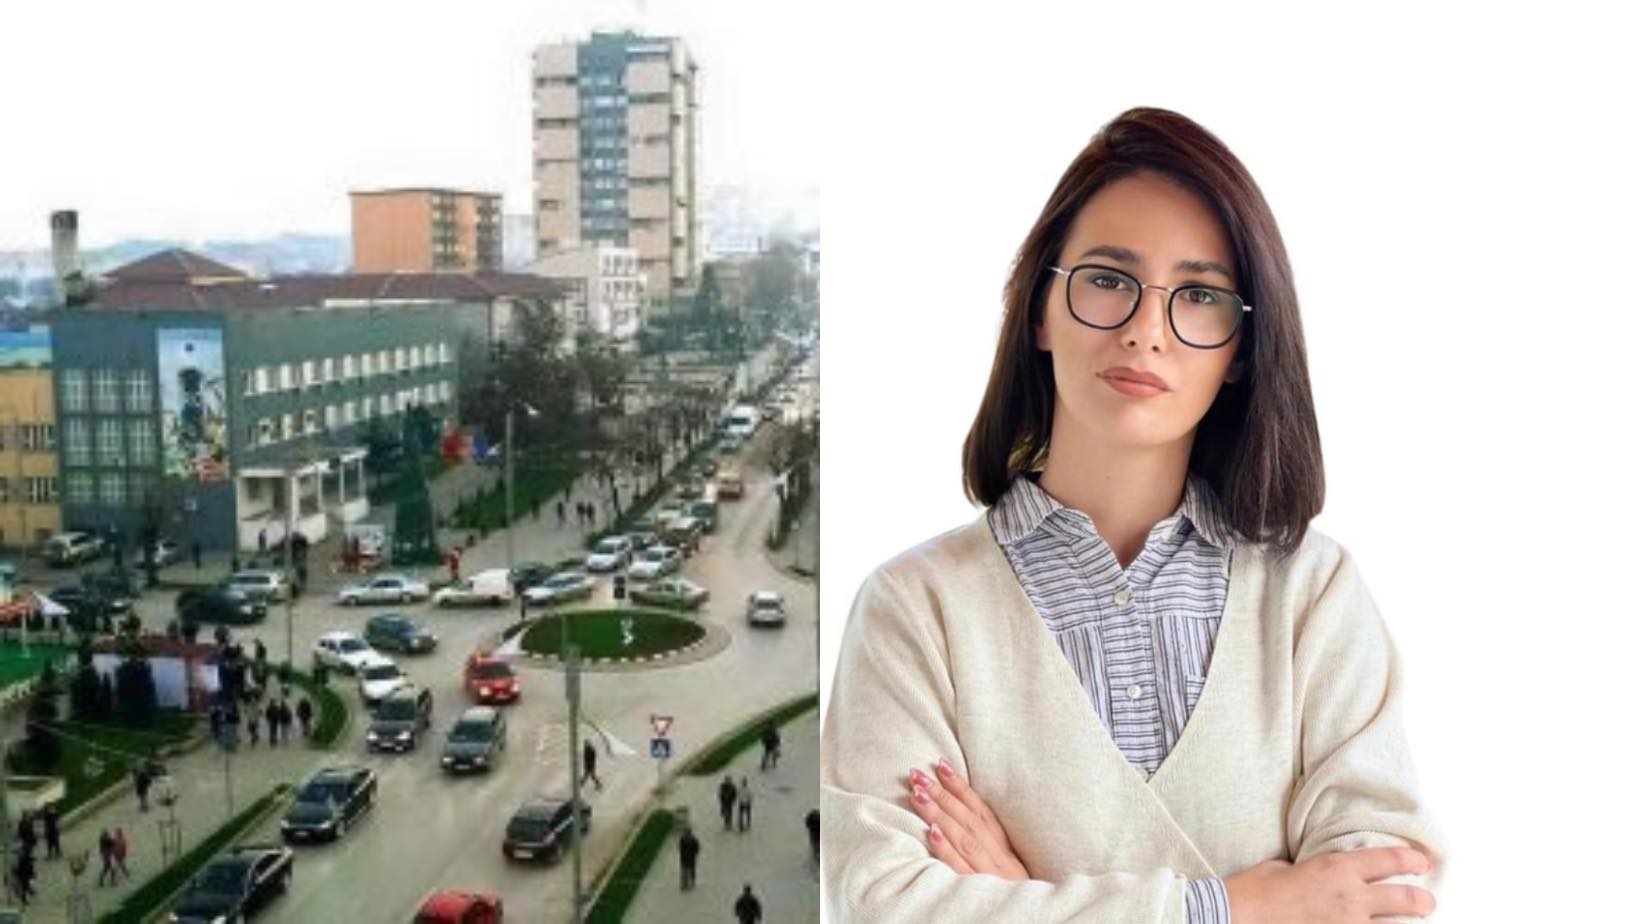 Drejtoresha e arsimit në Gjilan nuk distancohet nga gjuha e treshes që kërcënoi Periskopin në emër të saj: Do t’ju denoncoj në Polici